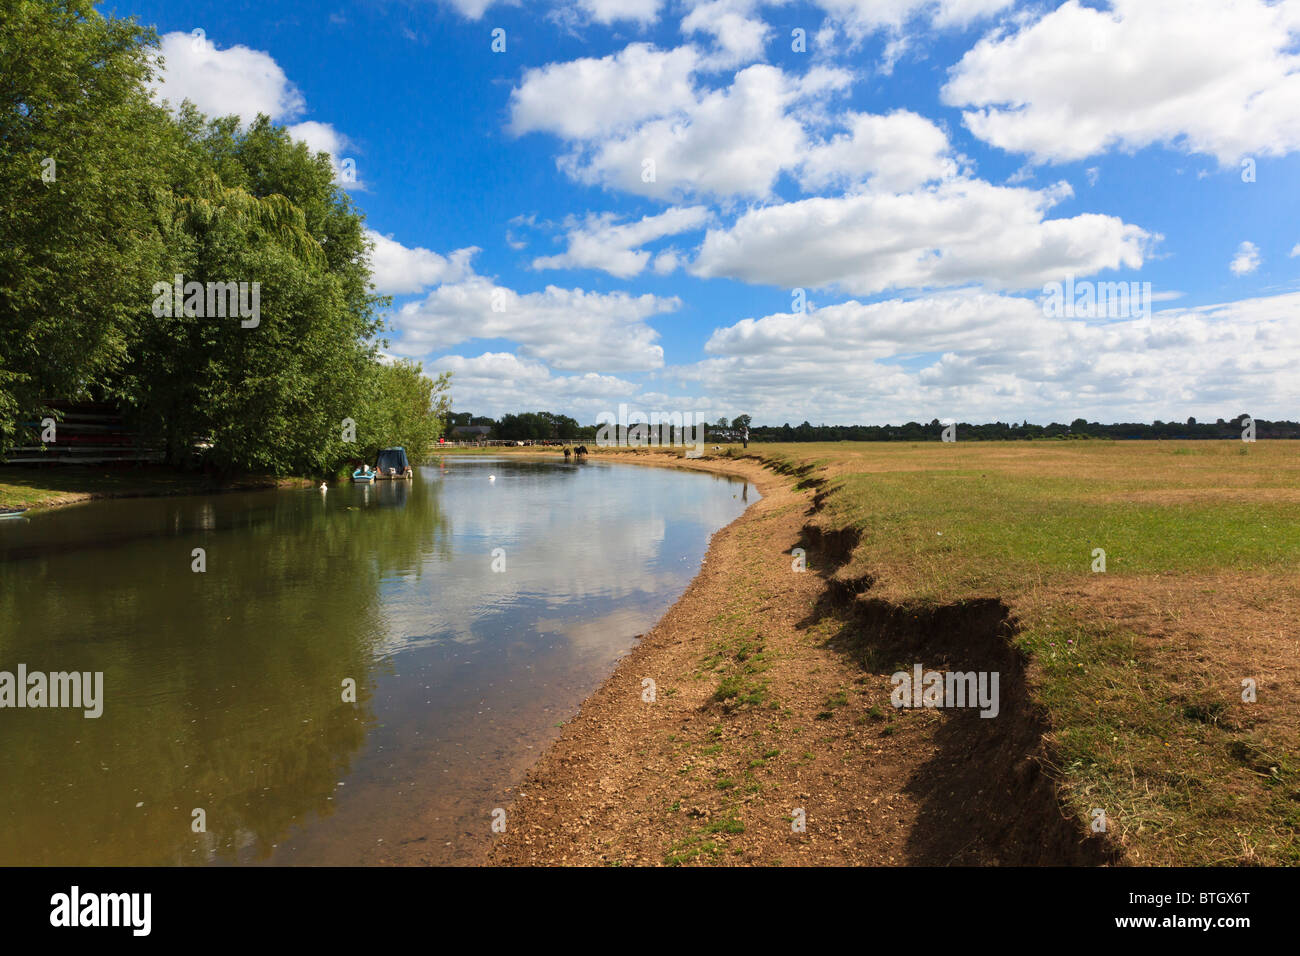 Attraktive Flussblick Wolvercote Common, Oxford mit entfernten festgemachten Boote, Vieh und dogwalker, Oxfordshire, Vereinigtes Königreich Stockfoto